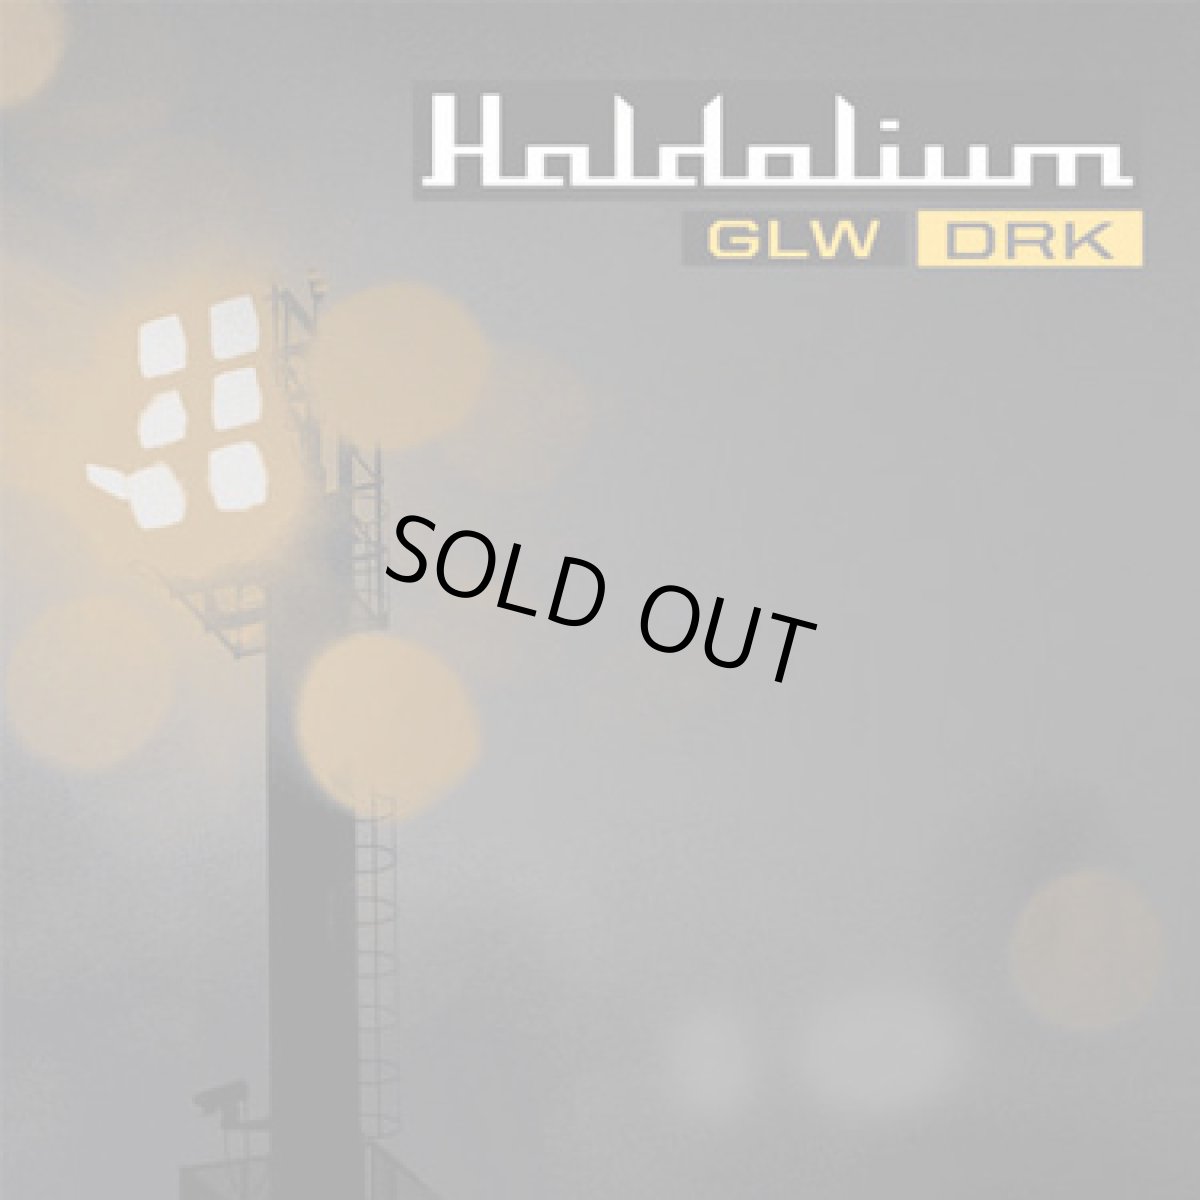 画像1: CD「Haldolium / GLW - DRK」 (1)